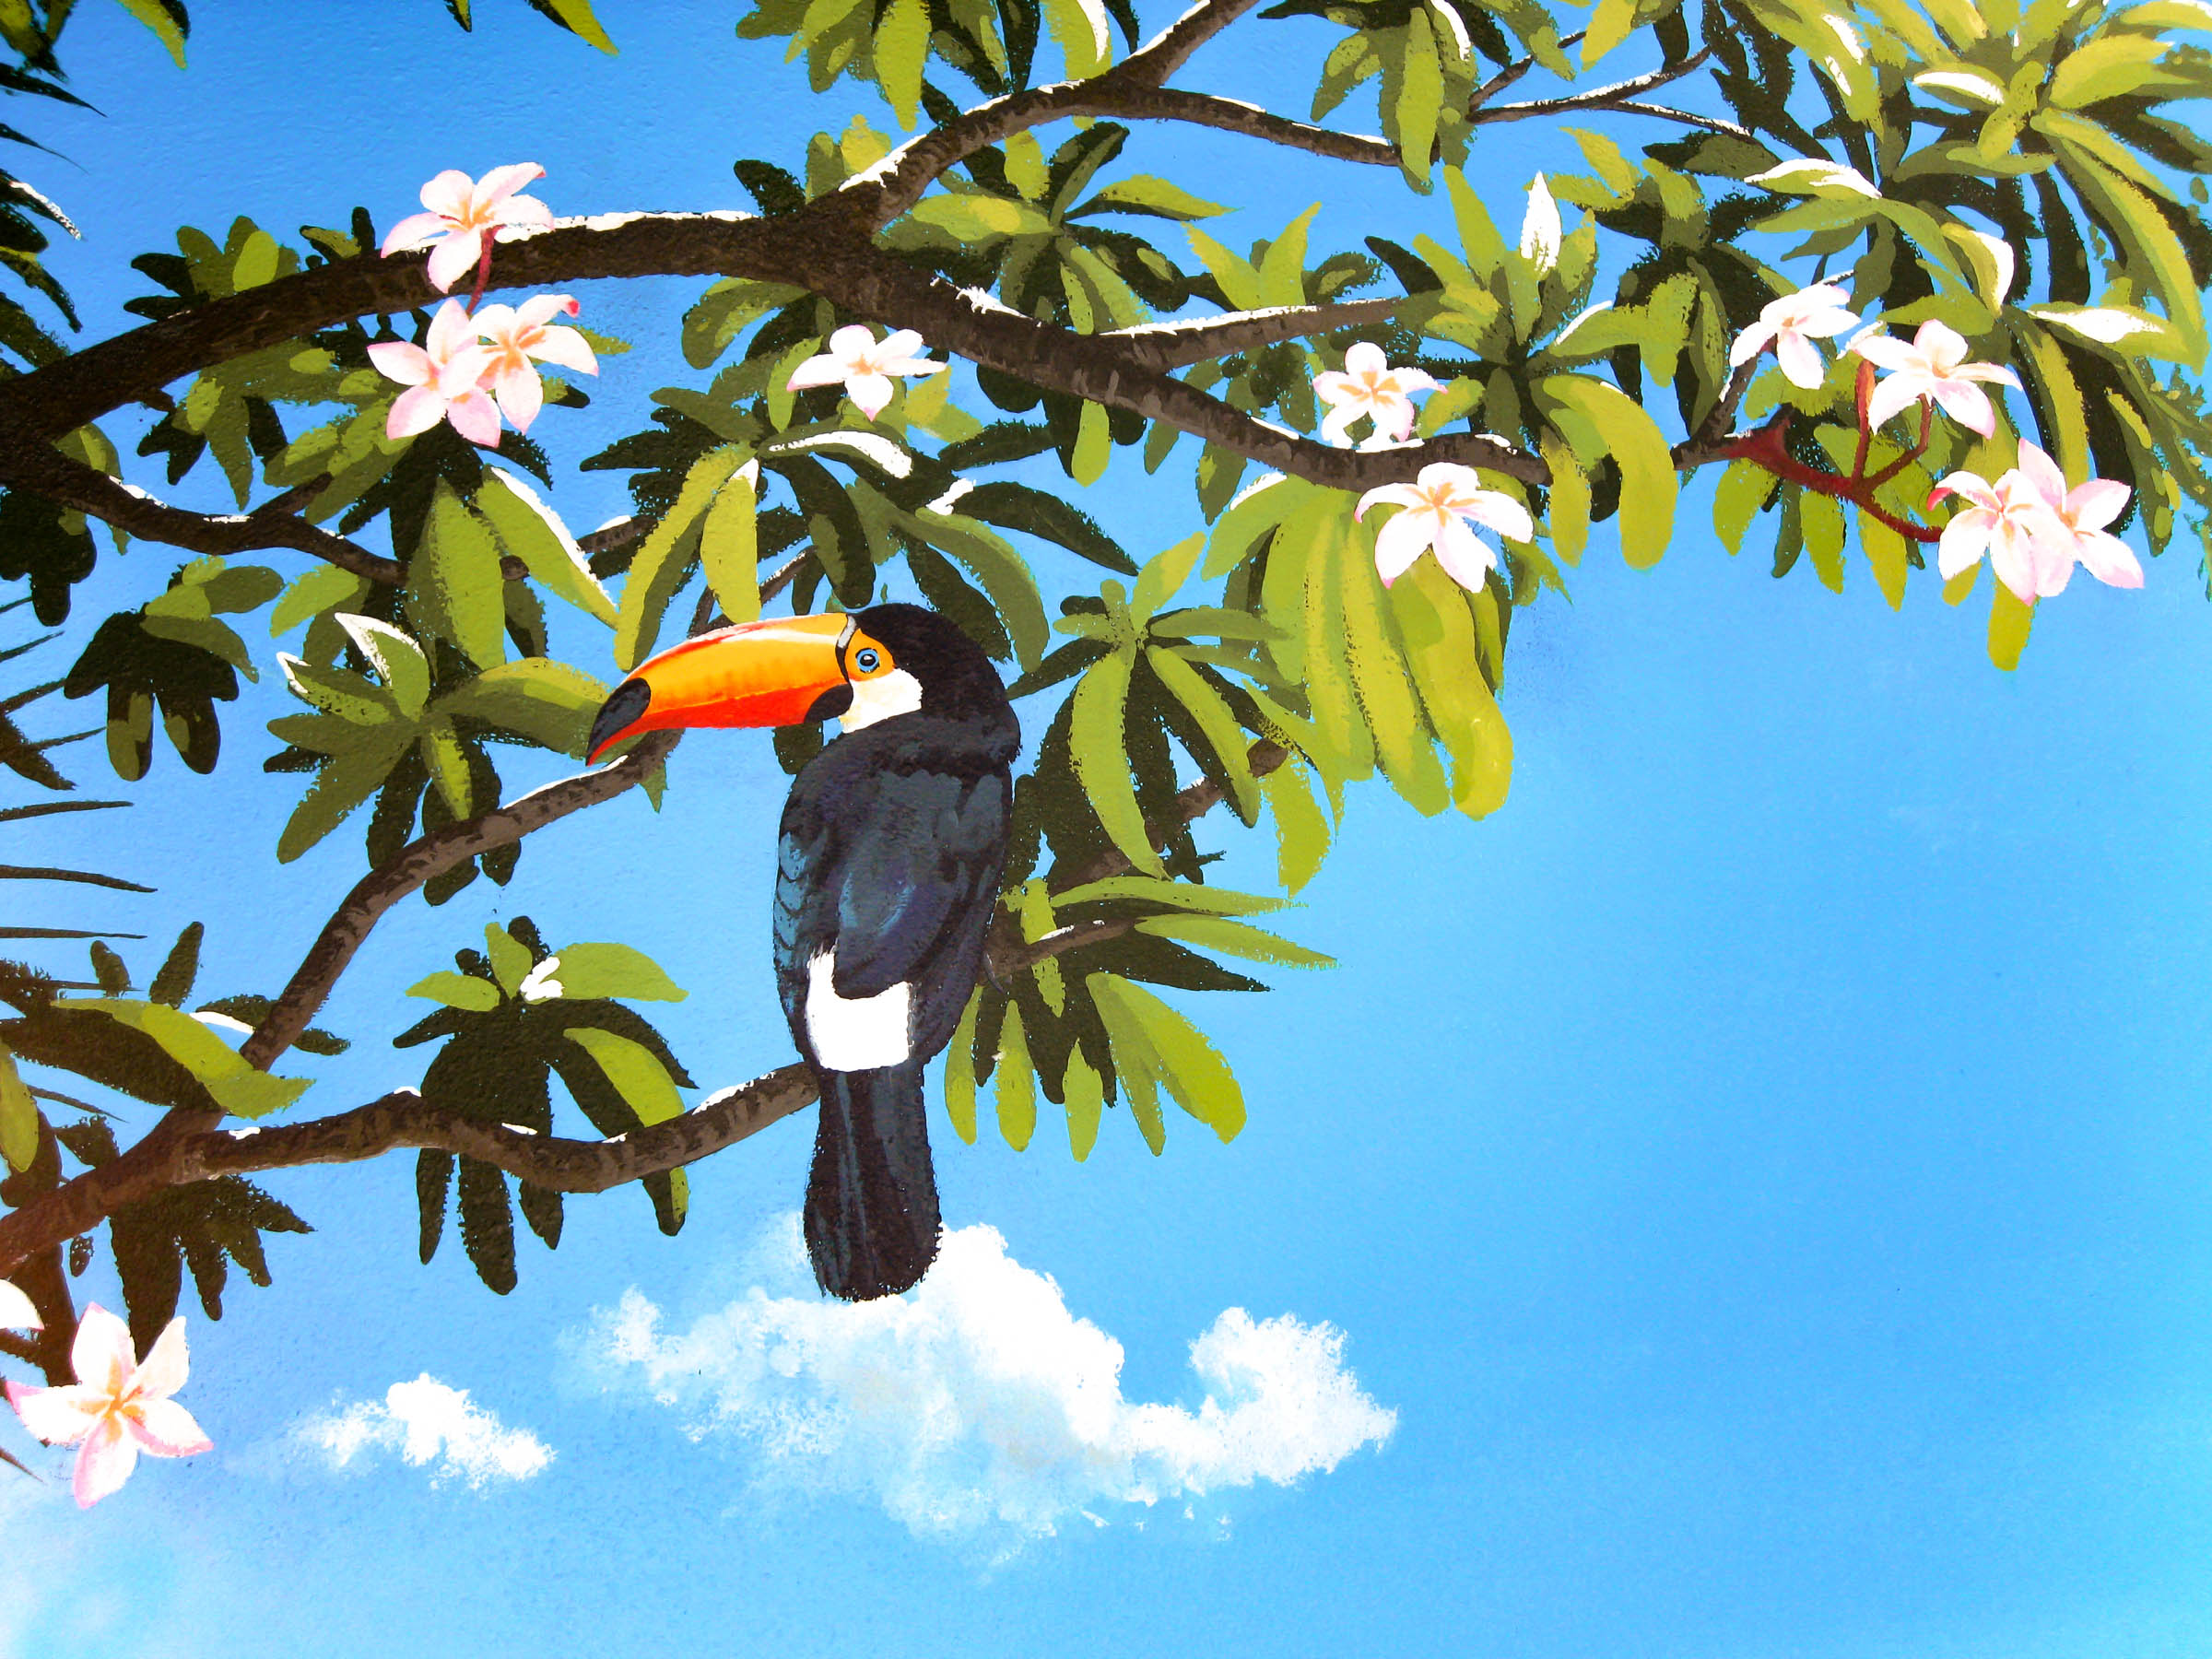 Toucan-in-tropical-tree-mural